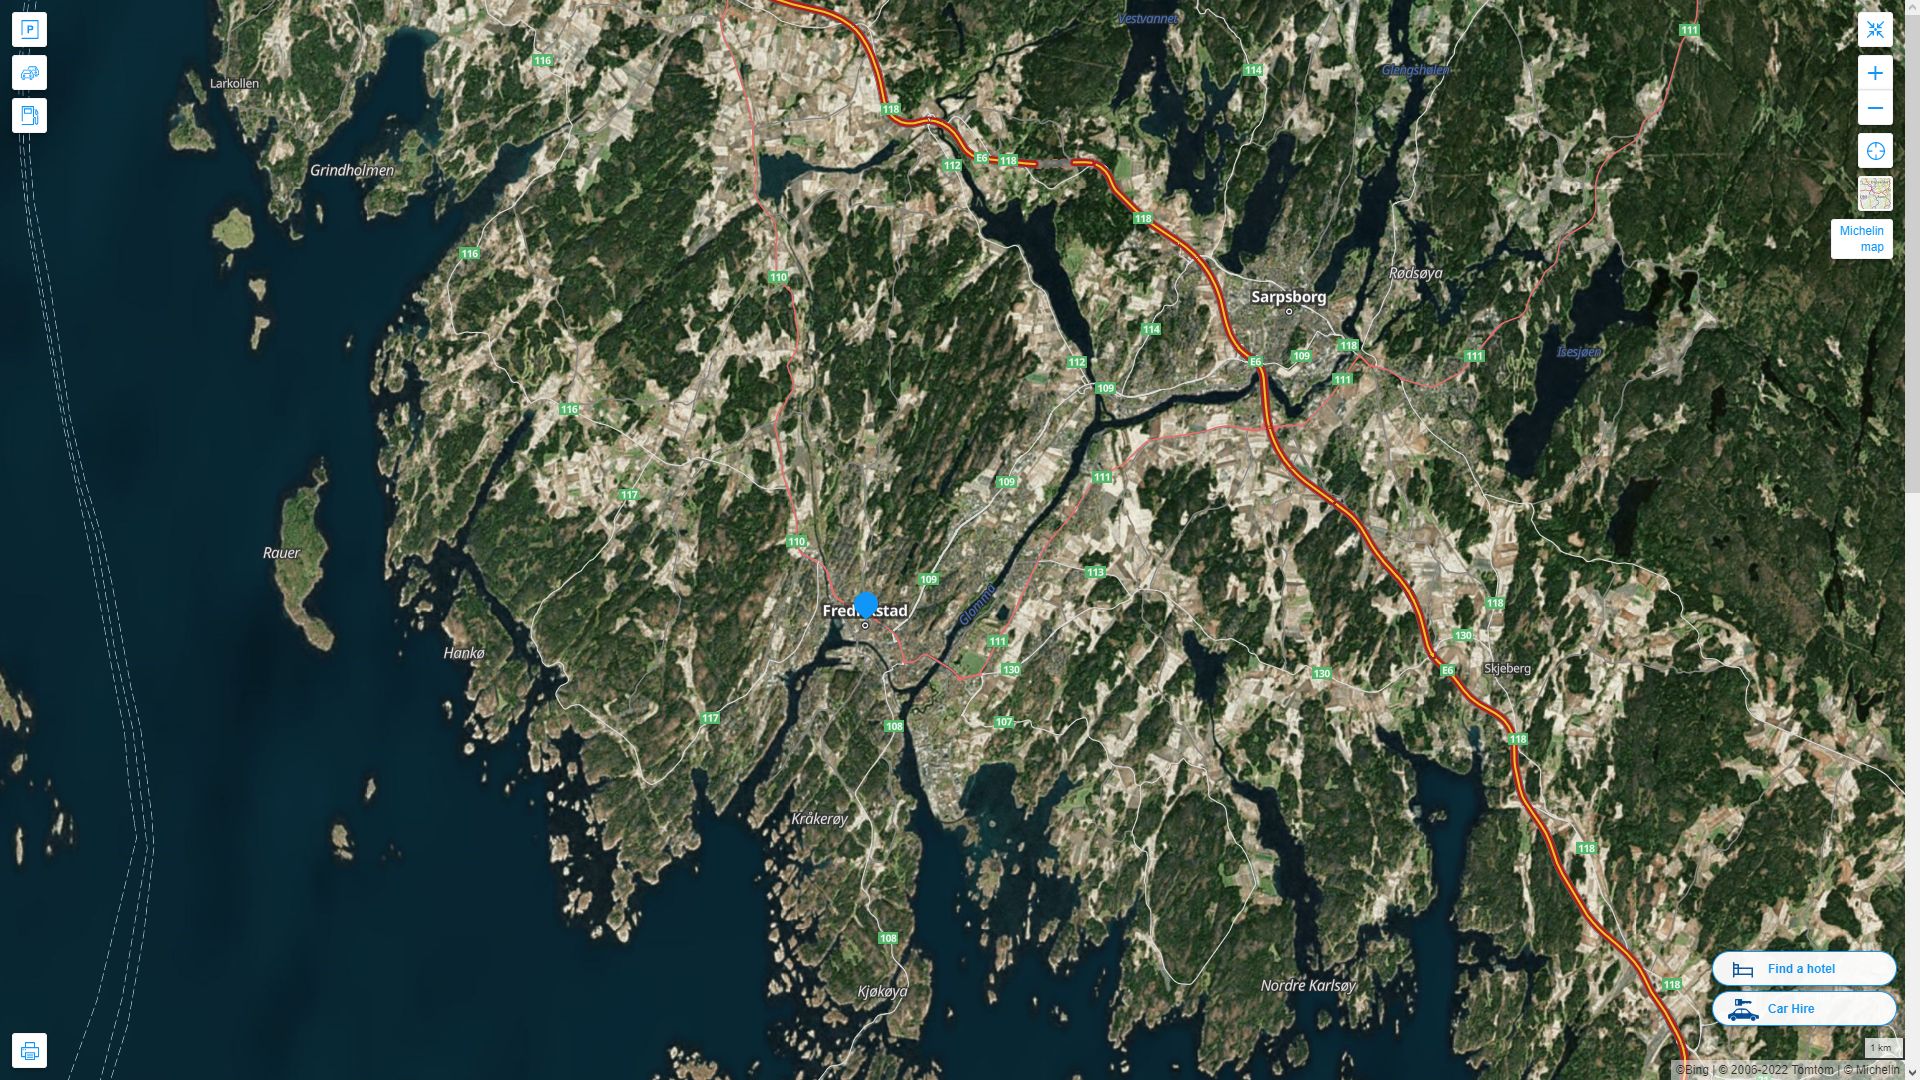 Fredrikstad Norvege Autoroute et carte routiere avec vue satellite